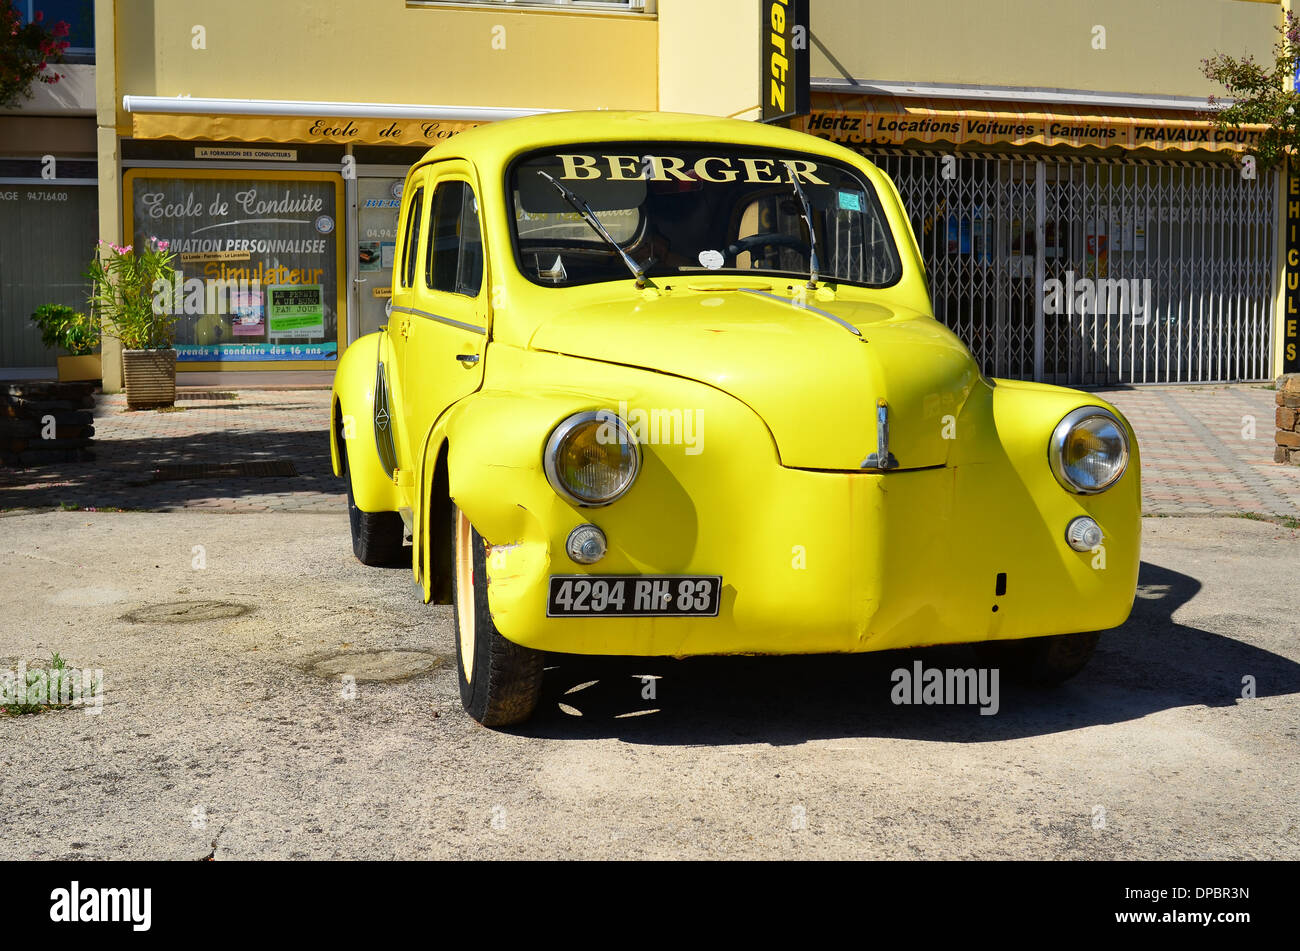 LE LAVANDOU, FRANCE - 15 septembre 2013 : vieille voiture jaune en face de l'école de conduite en cote azur, France Banque D'Images